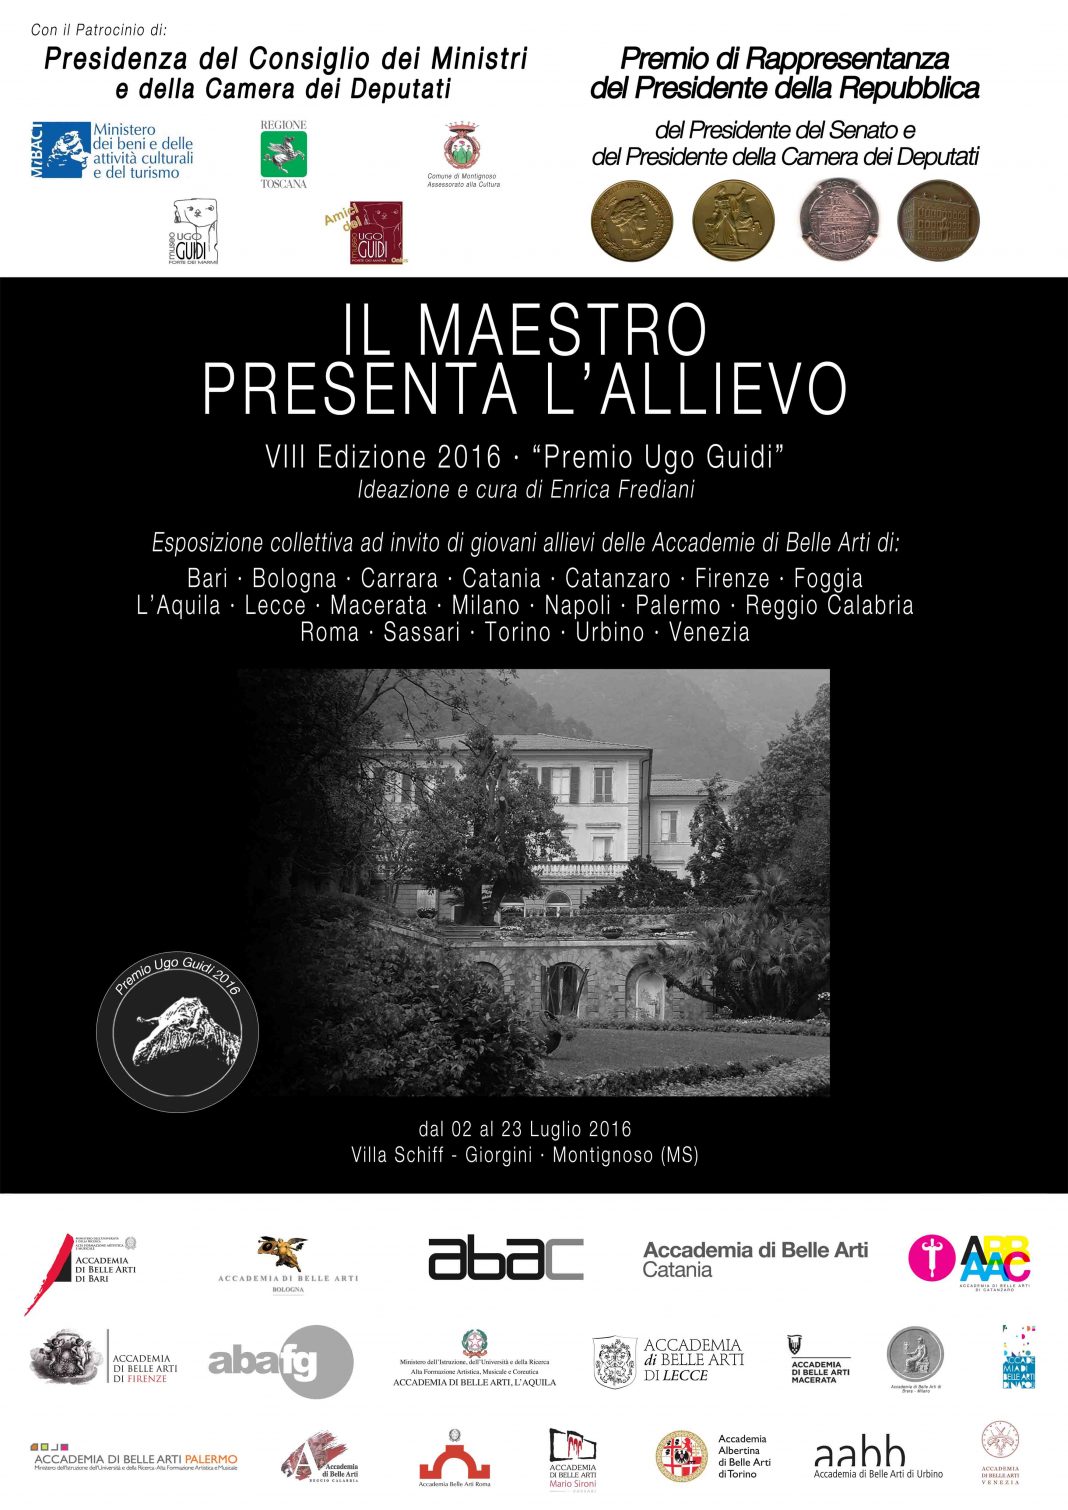 VIII Il Maestro presenta l’Allievo – Collettiva Accademiehttps://www.exibart.com/repository/media/eventi/2016/06/viii-il-maestro-presenta-l8217allievo-8211-collettiva-accademie-1068x1510.jpg